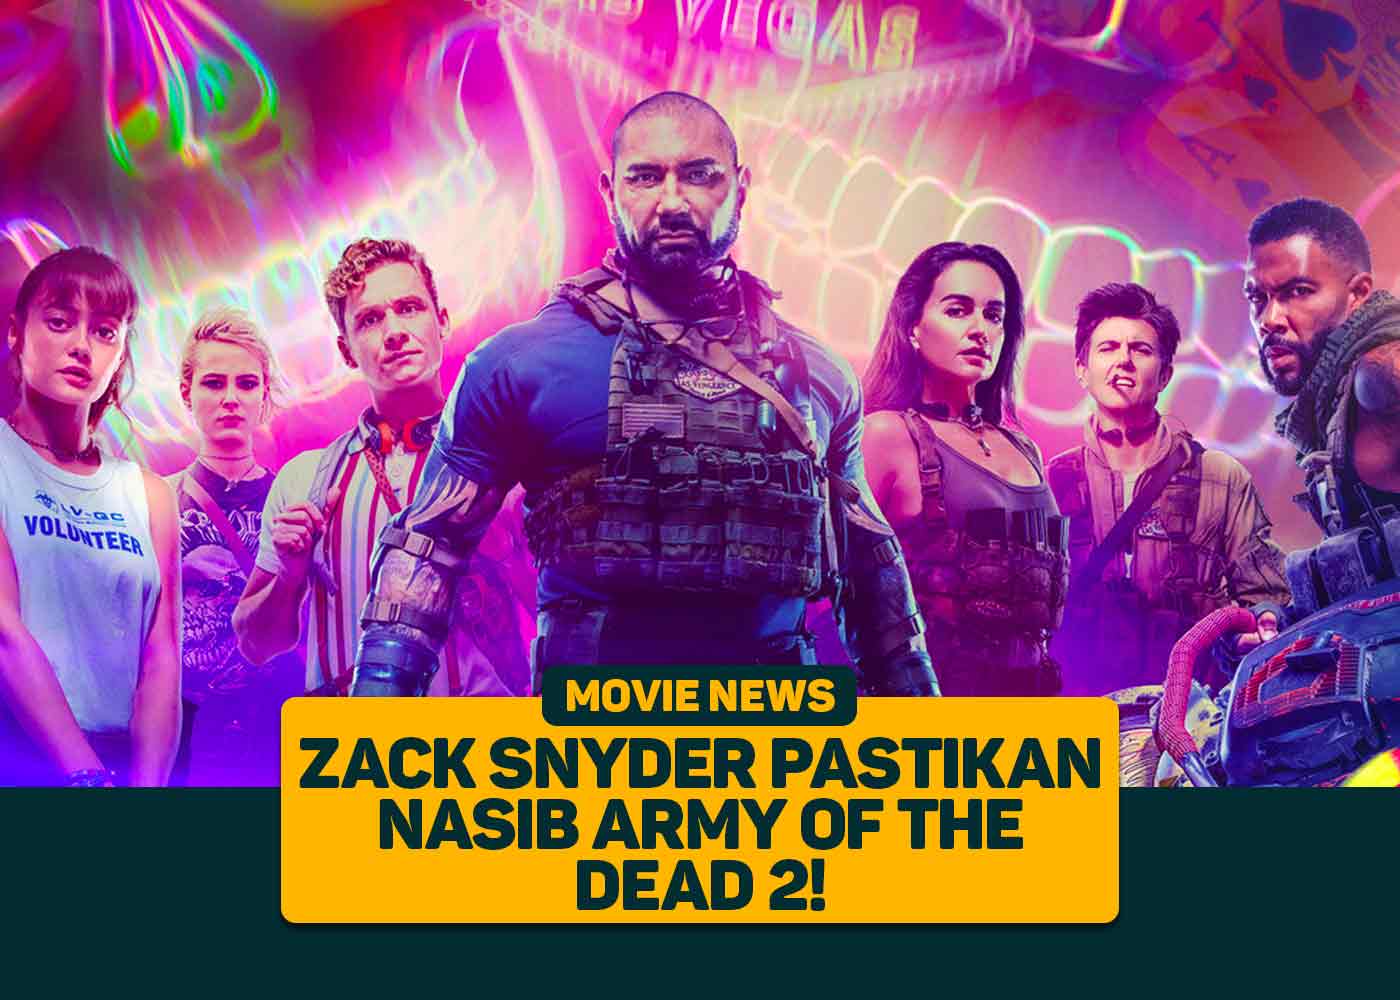 Zack Snyder Pastikan Nasib Army of the Dead 2!